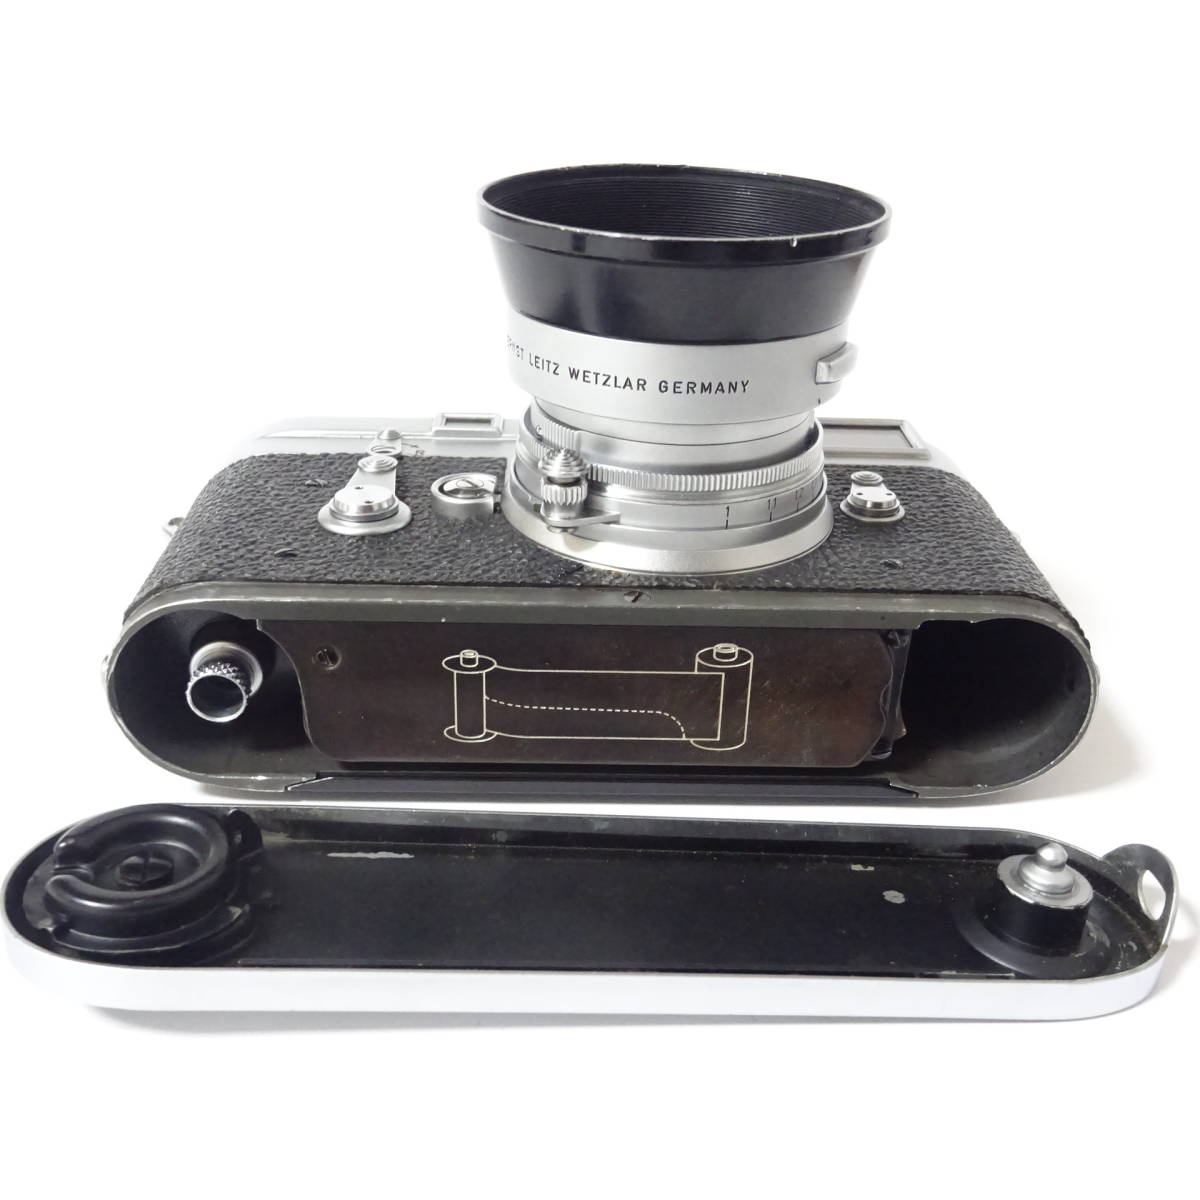 Leica ライカ M3 レンジファインダー フィルムカメラ/レンズセット 動作未確認【60サイズ/同梱不可/大阪発送】【2398756/217/mrrz】_画像6